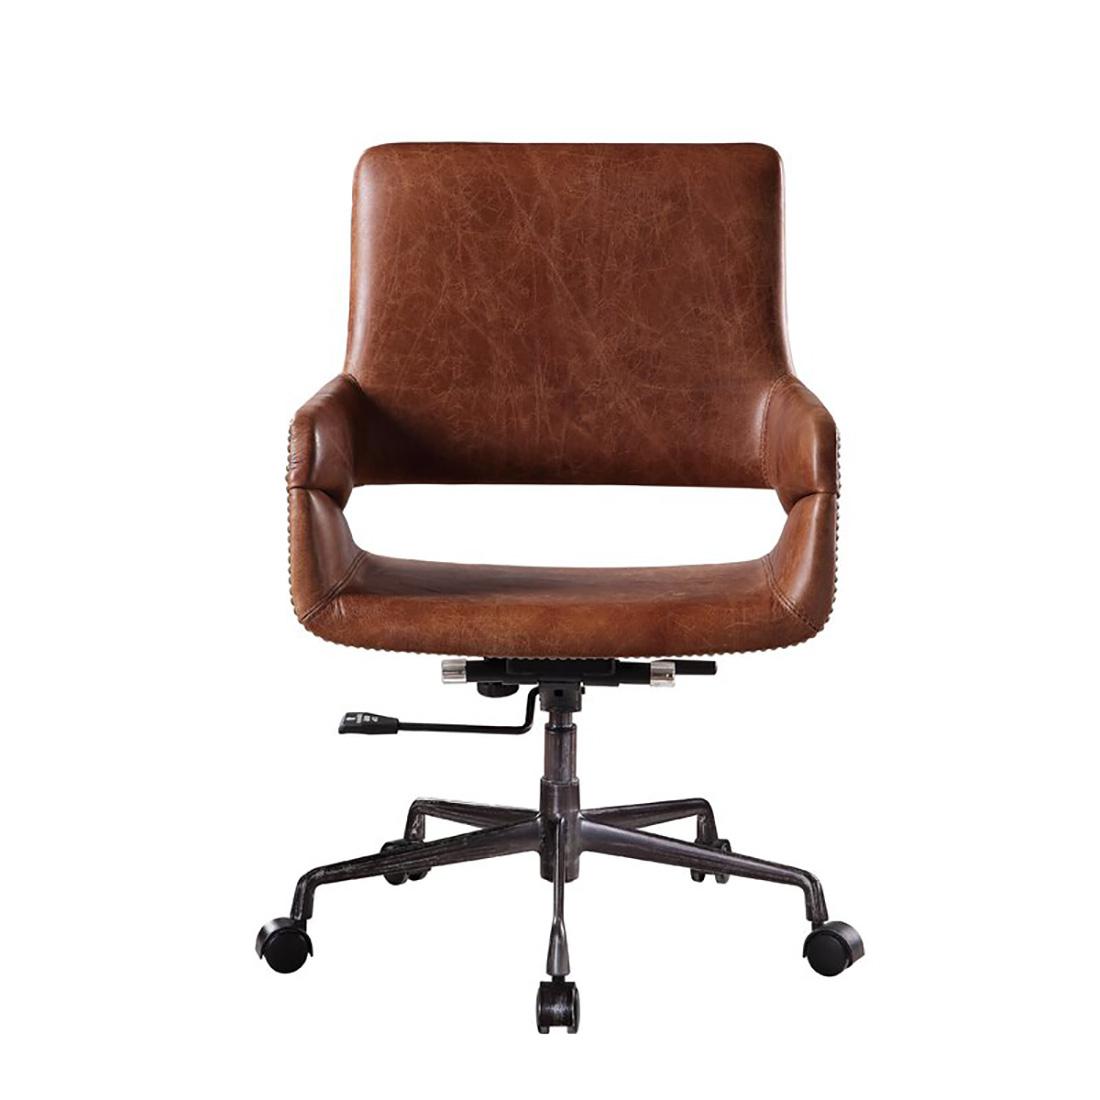 

    
Kamau 92567 Acme Furniture Executive Chair
